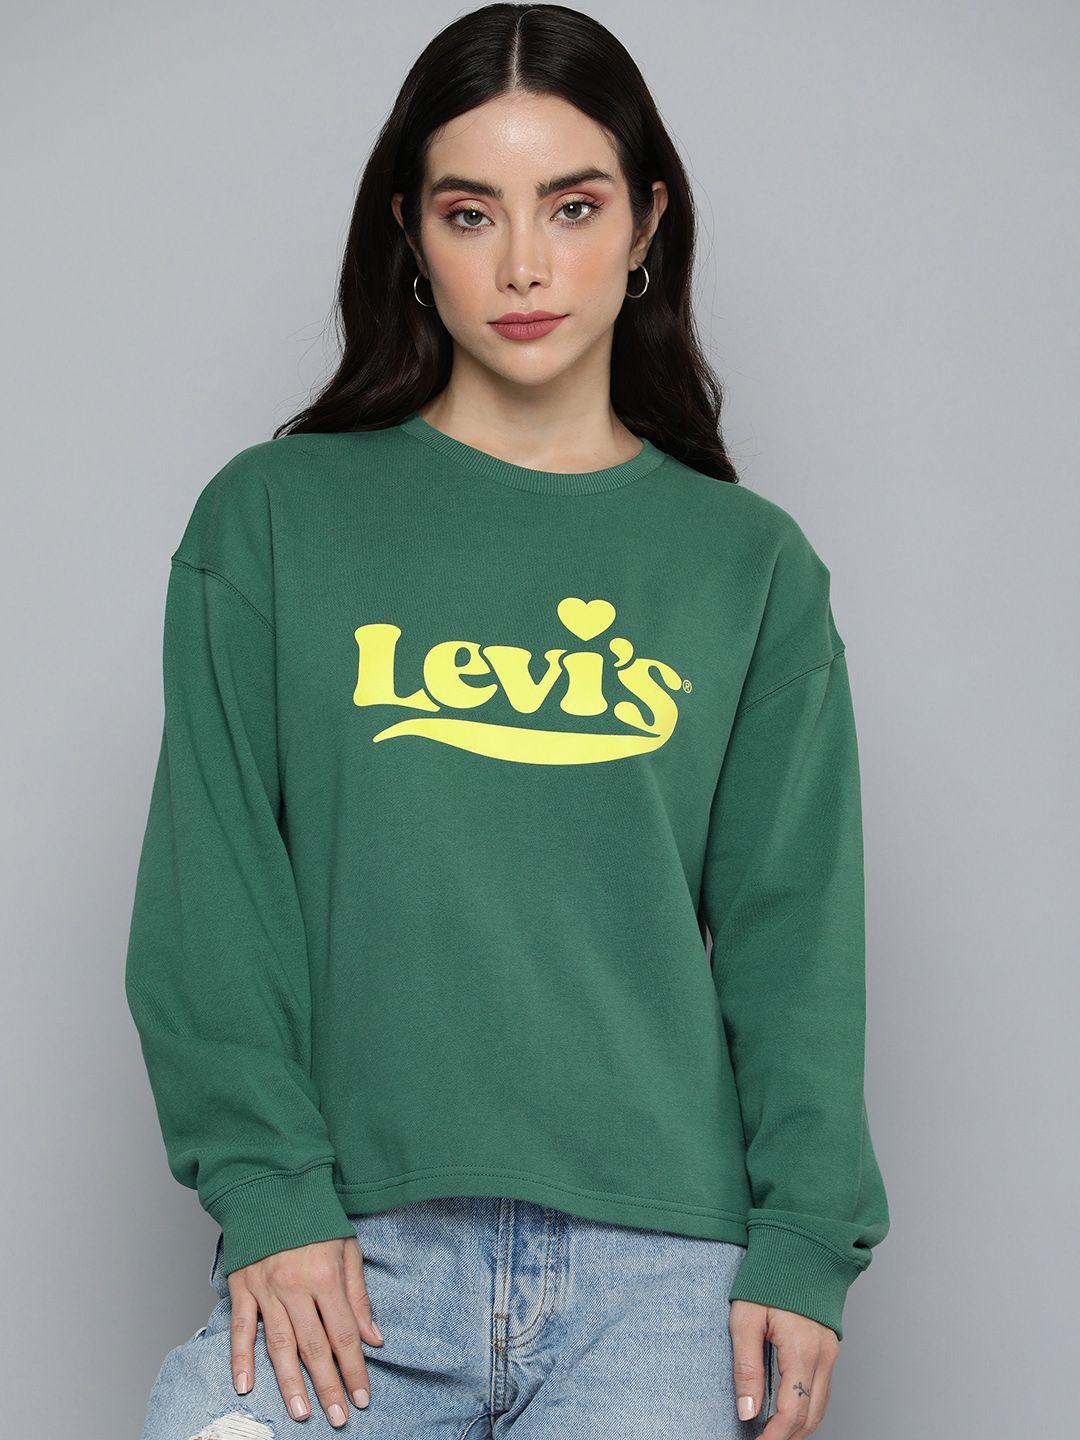 Levis Round Neck Pure Cotton Brand Logo Printed Sweatshirt